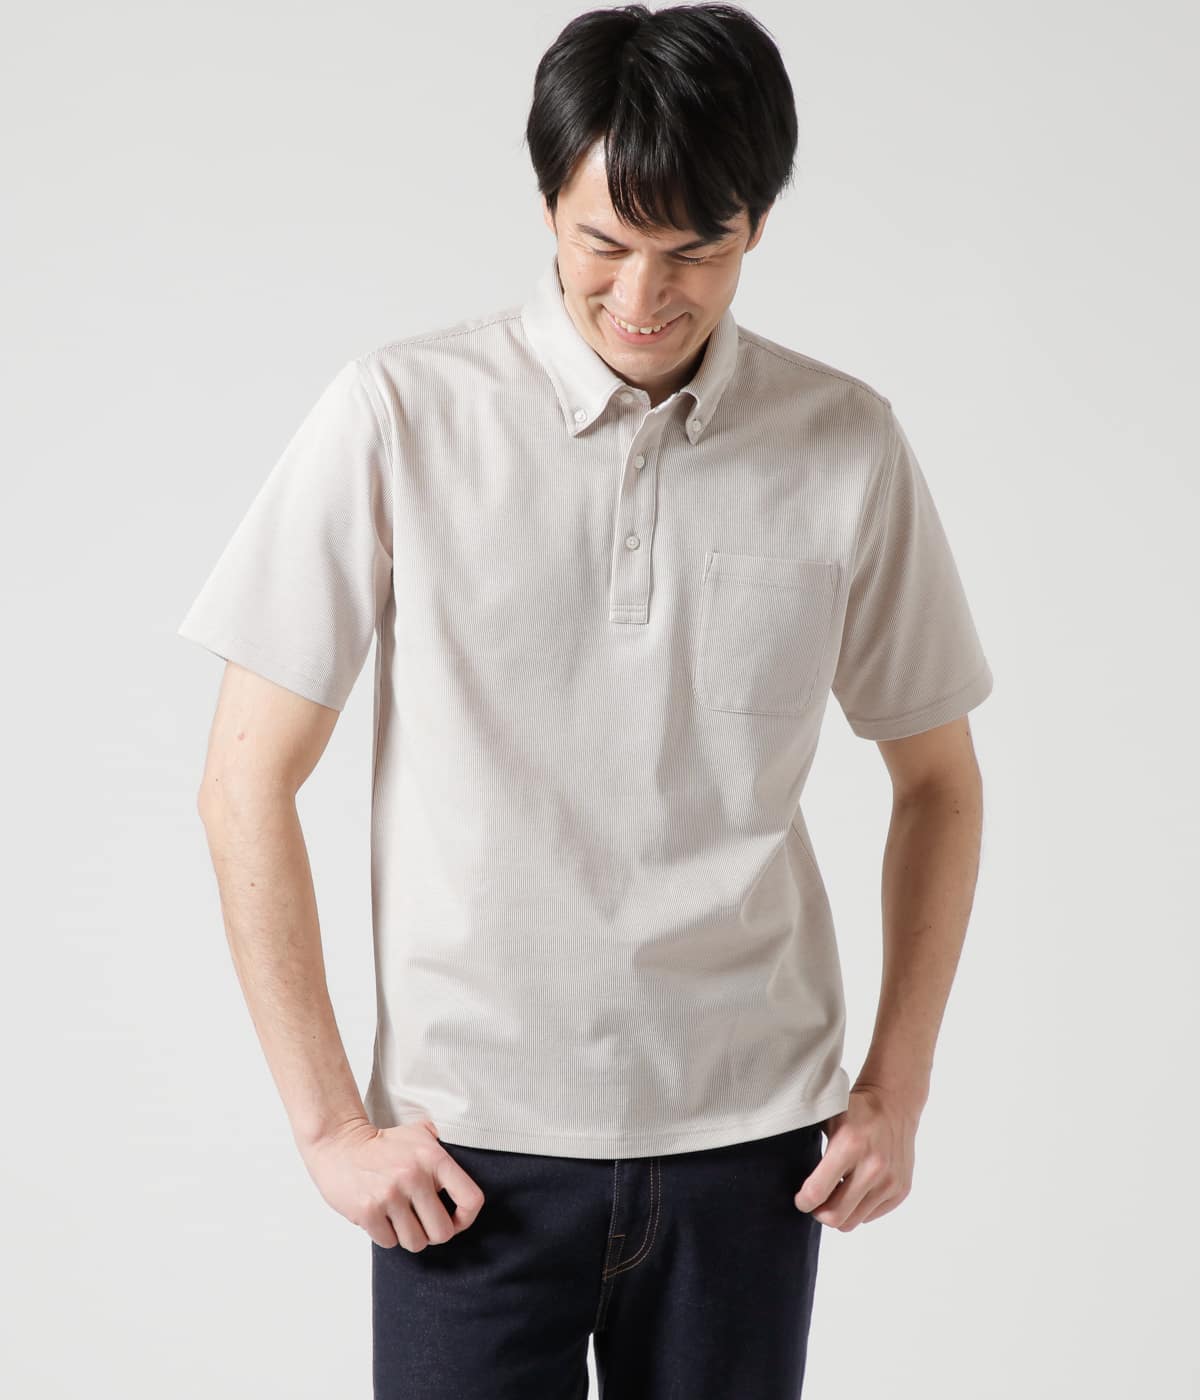 【吸水速乾】COOL COMFORT コードレーン ボタンダウンポロシャツ